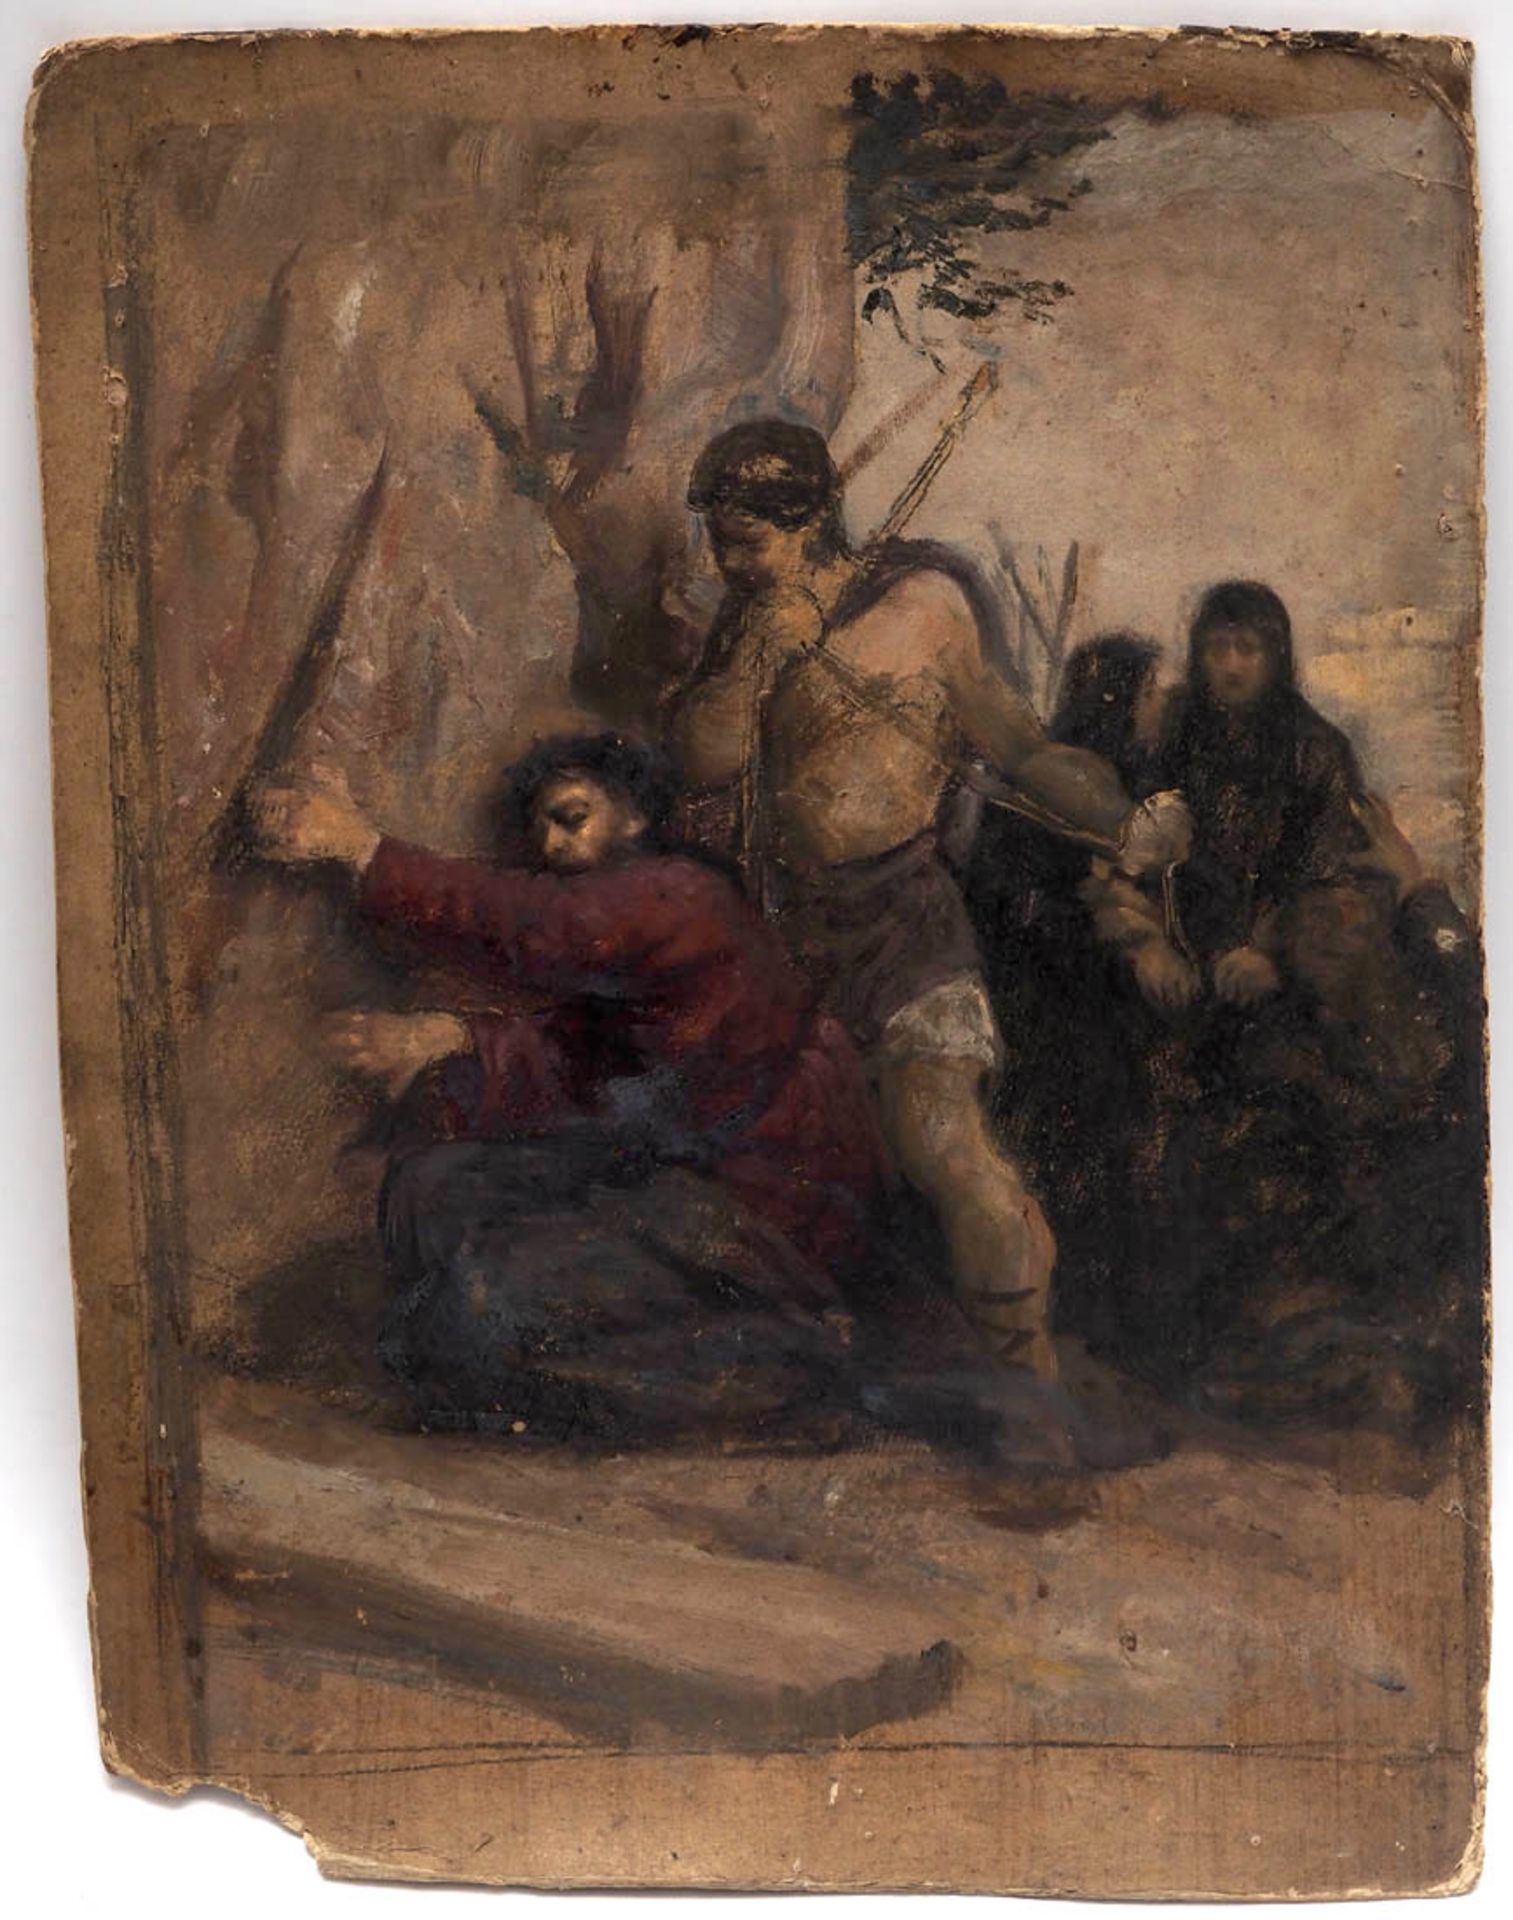 Schmidlin, Adolf, 1868 - 1954 Szene aus der Passion Christi. Ölstudie auf Karton, unsign.,